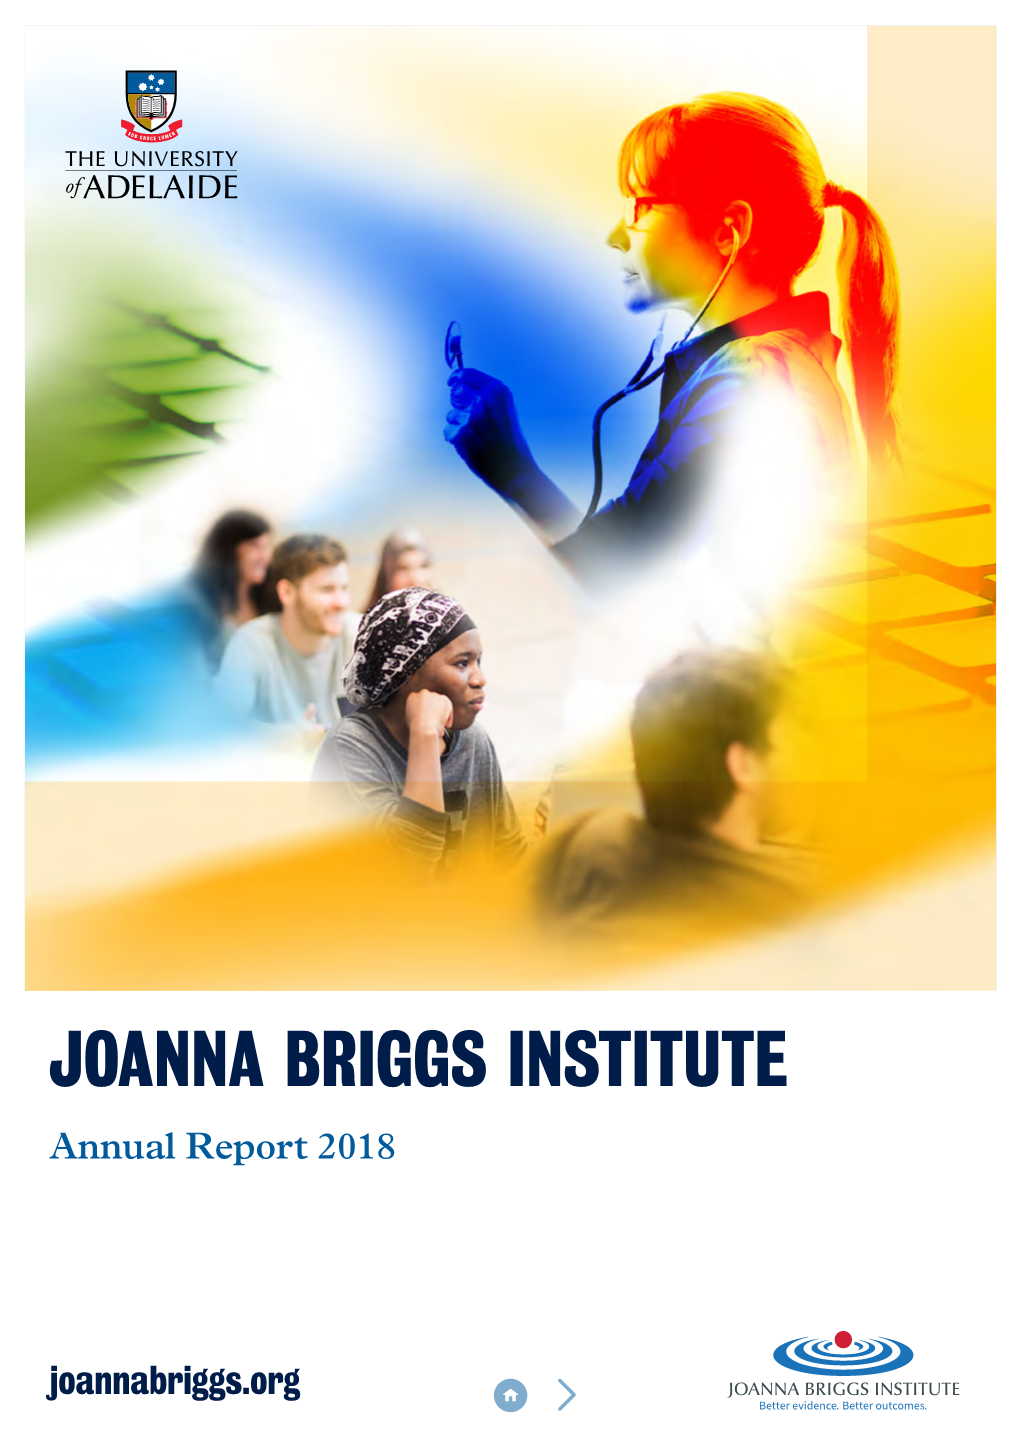 JOANNA BRIGGS INSTITUTE Annual Report 2018